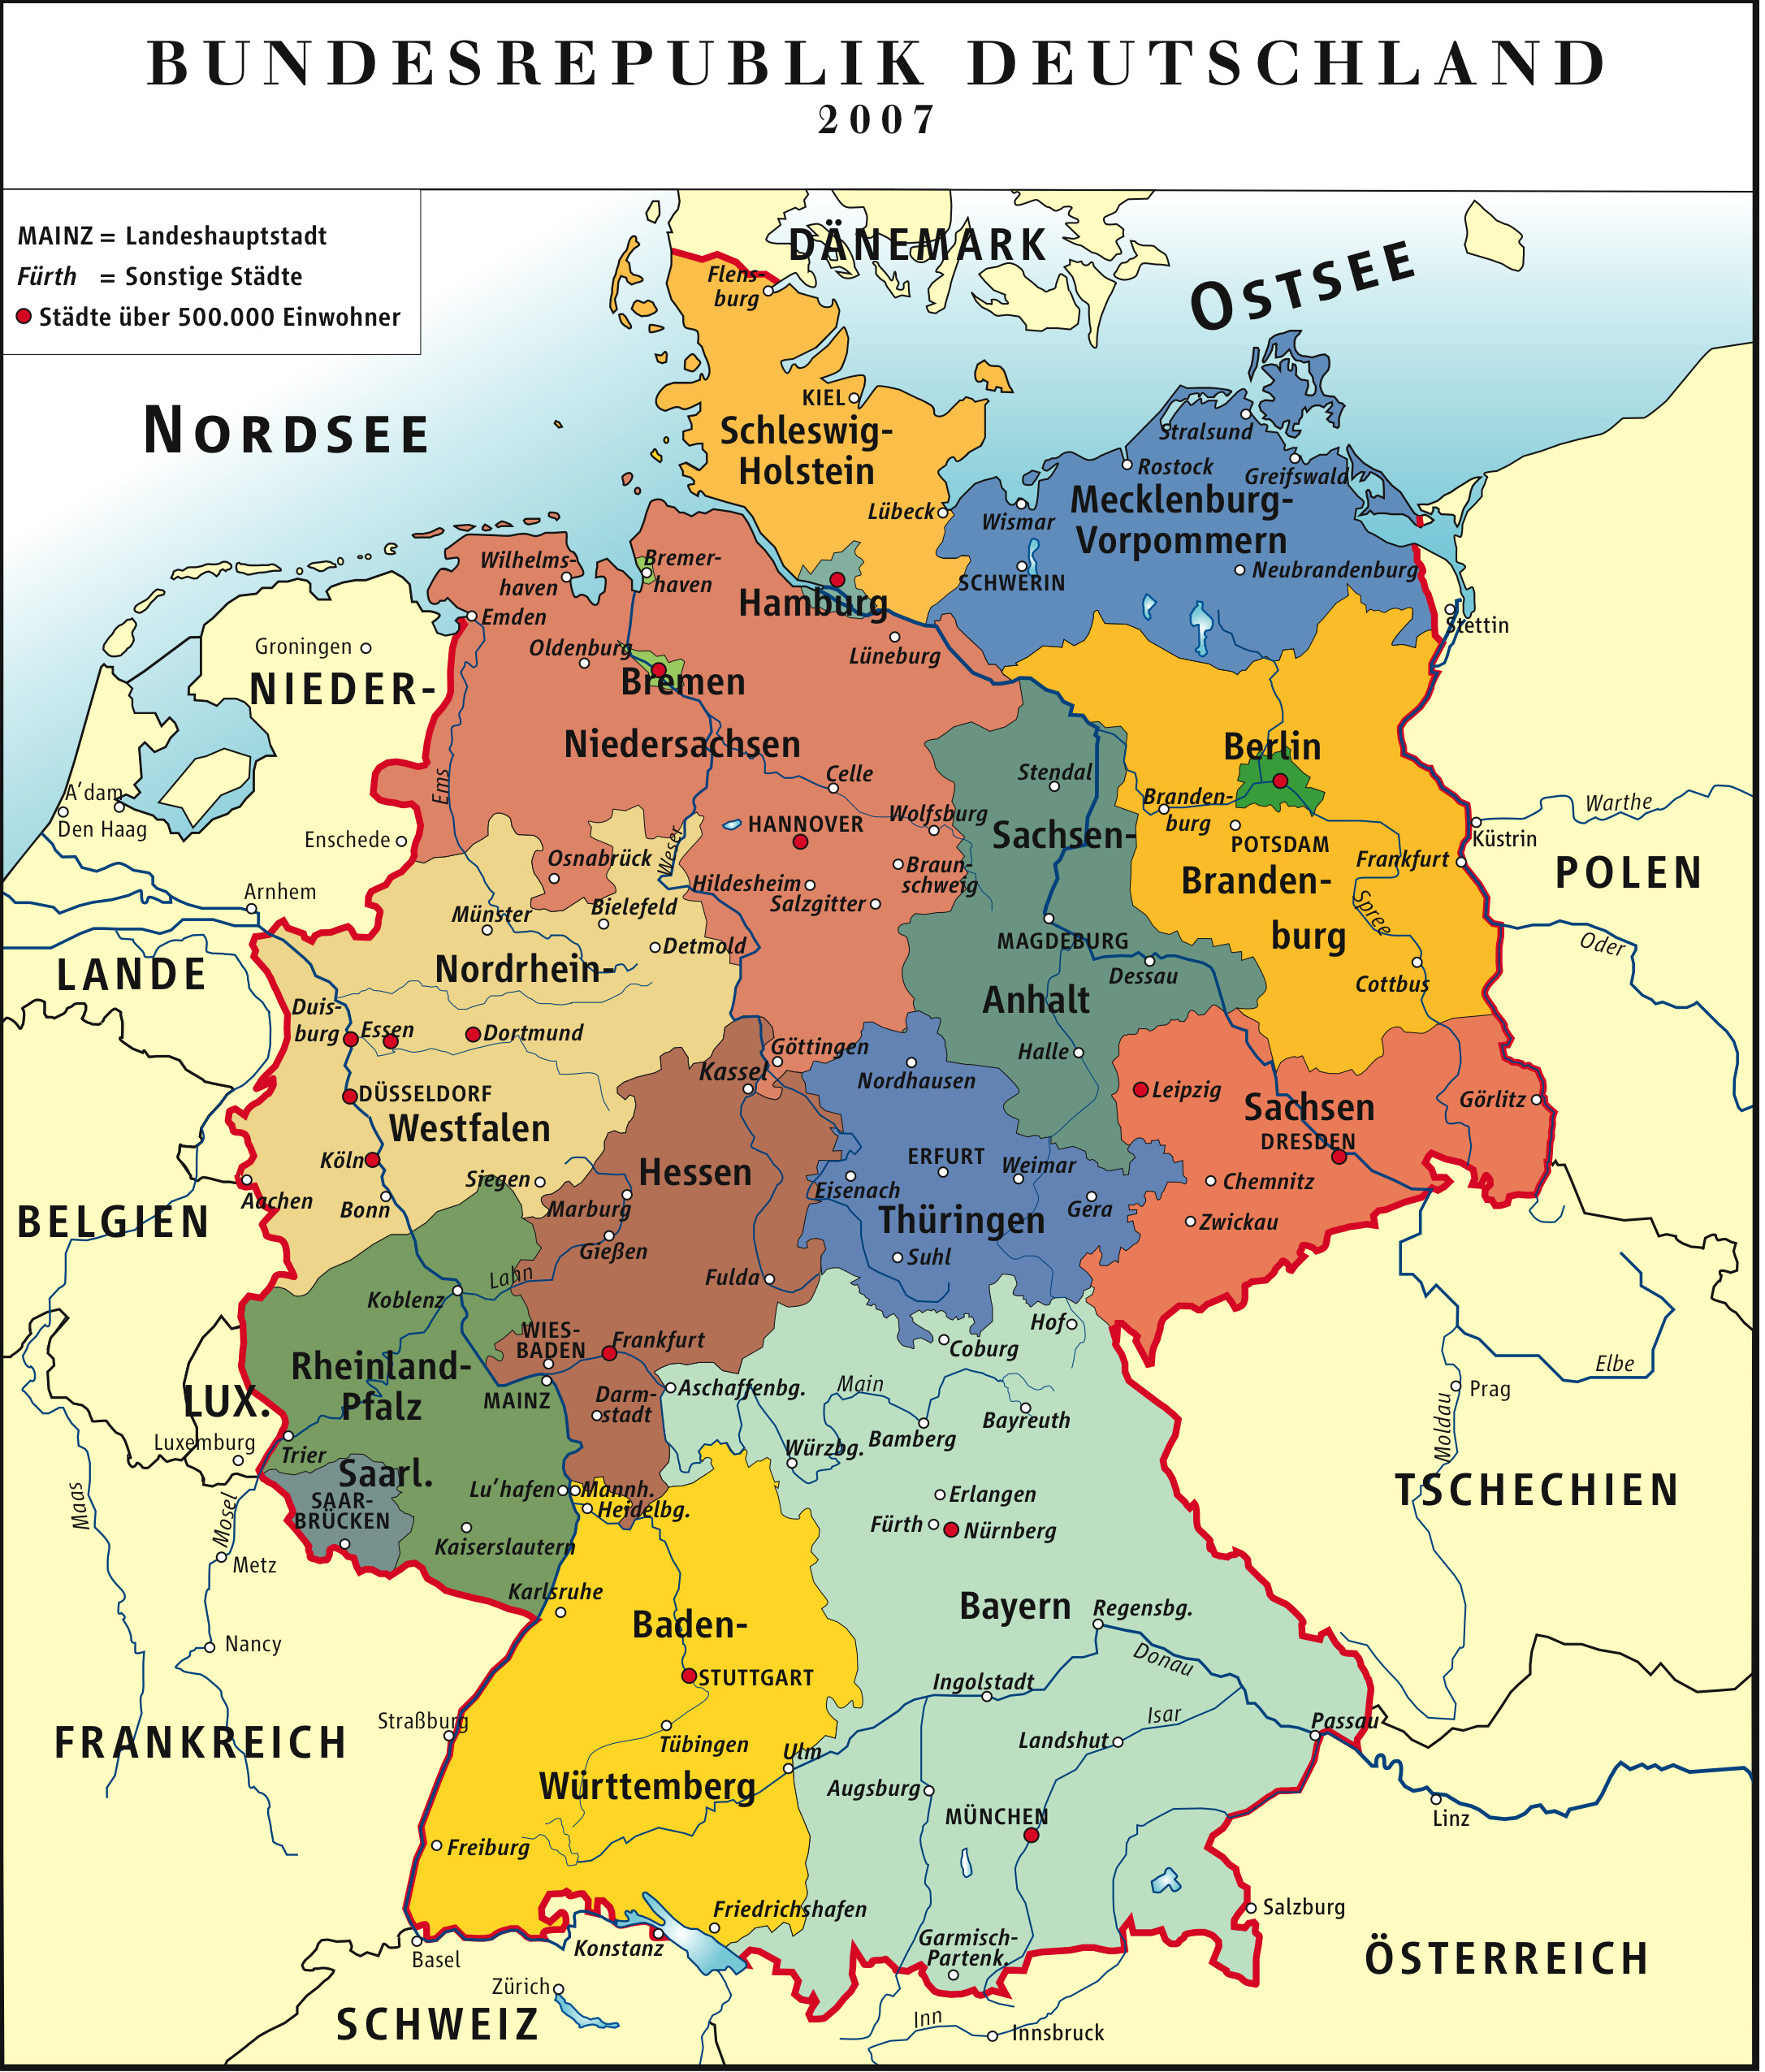 Bộ sưu tập bản đồ của nước Đức chi tiết và chính xác